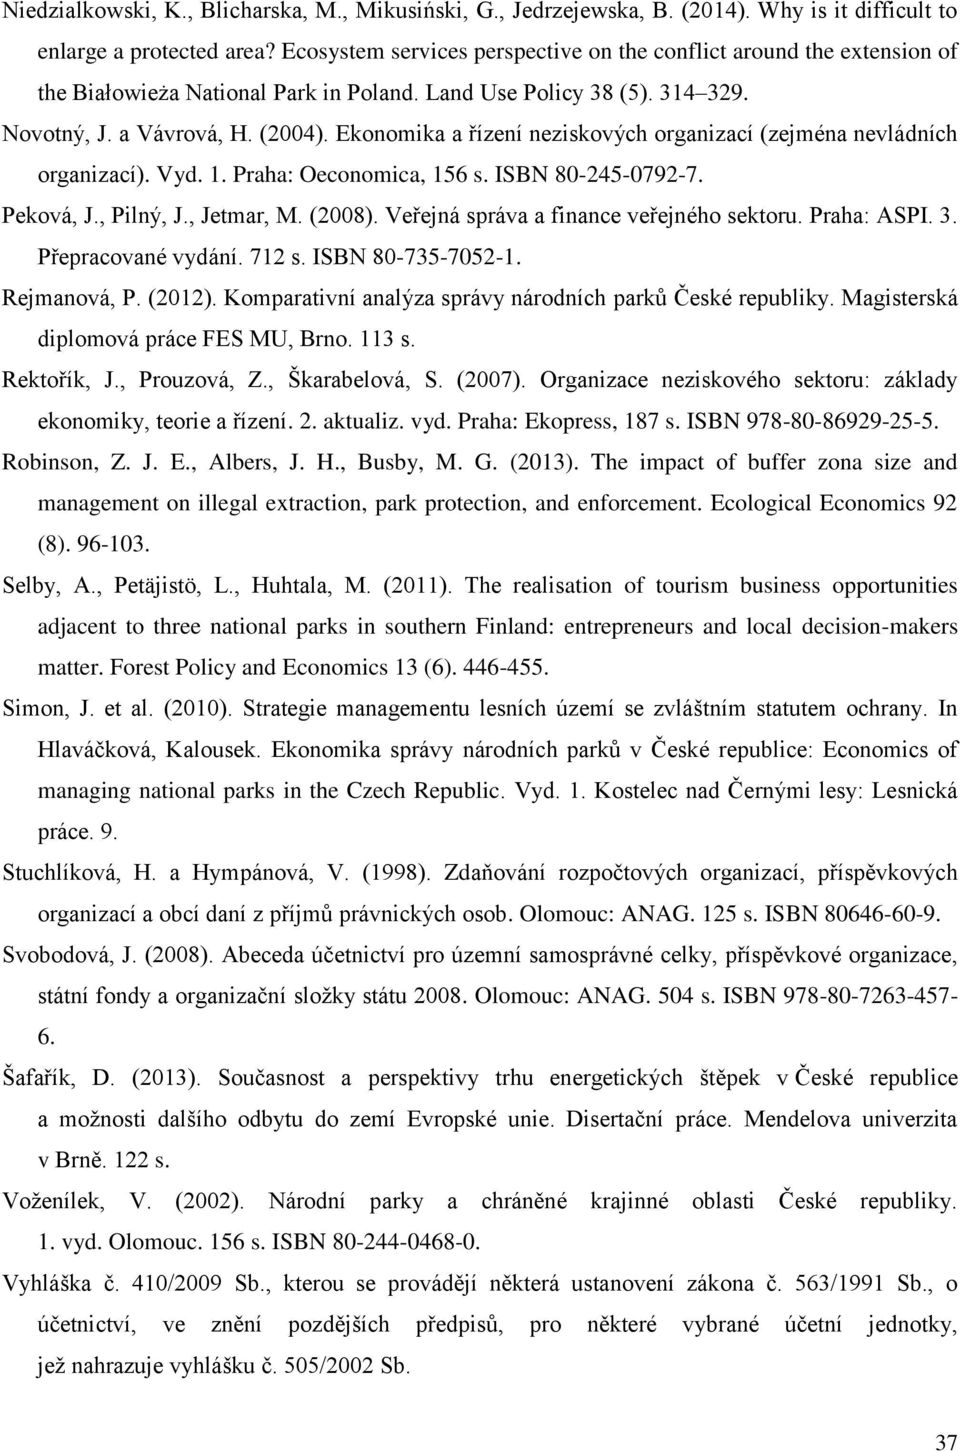 Ekonomika a řízení neziskových organizací (zejména nevládních organizací). Vyd. 1. Praha: Oeconomica, 156 s. ISBN 80-245-0792-7. Peková, J., Pilný, J., Jetmar, M. (2008).